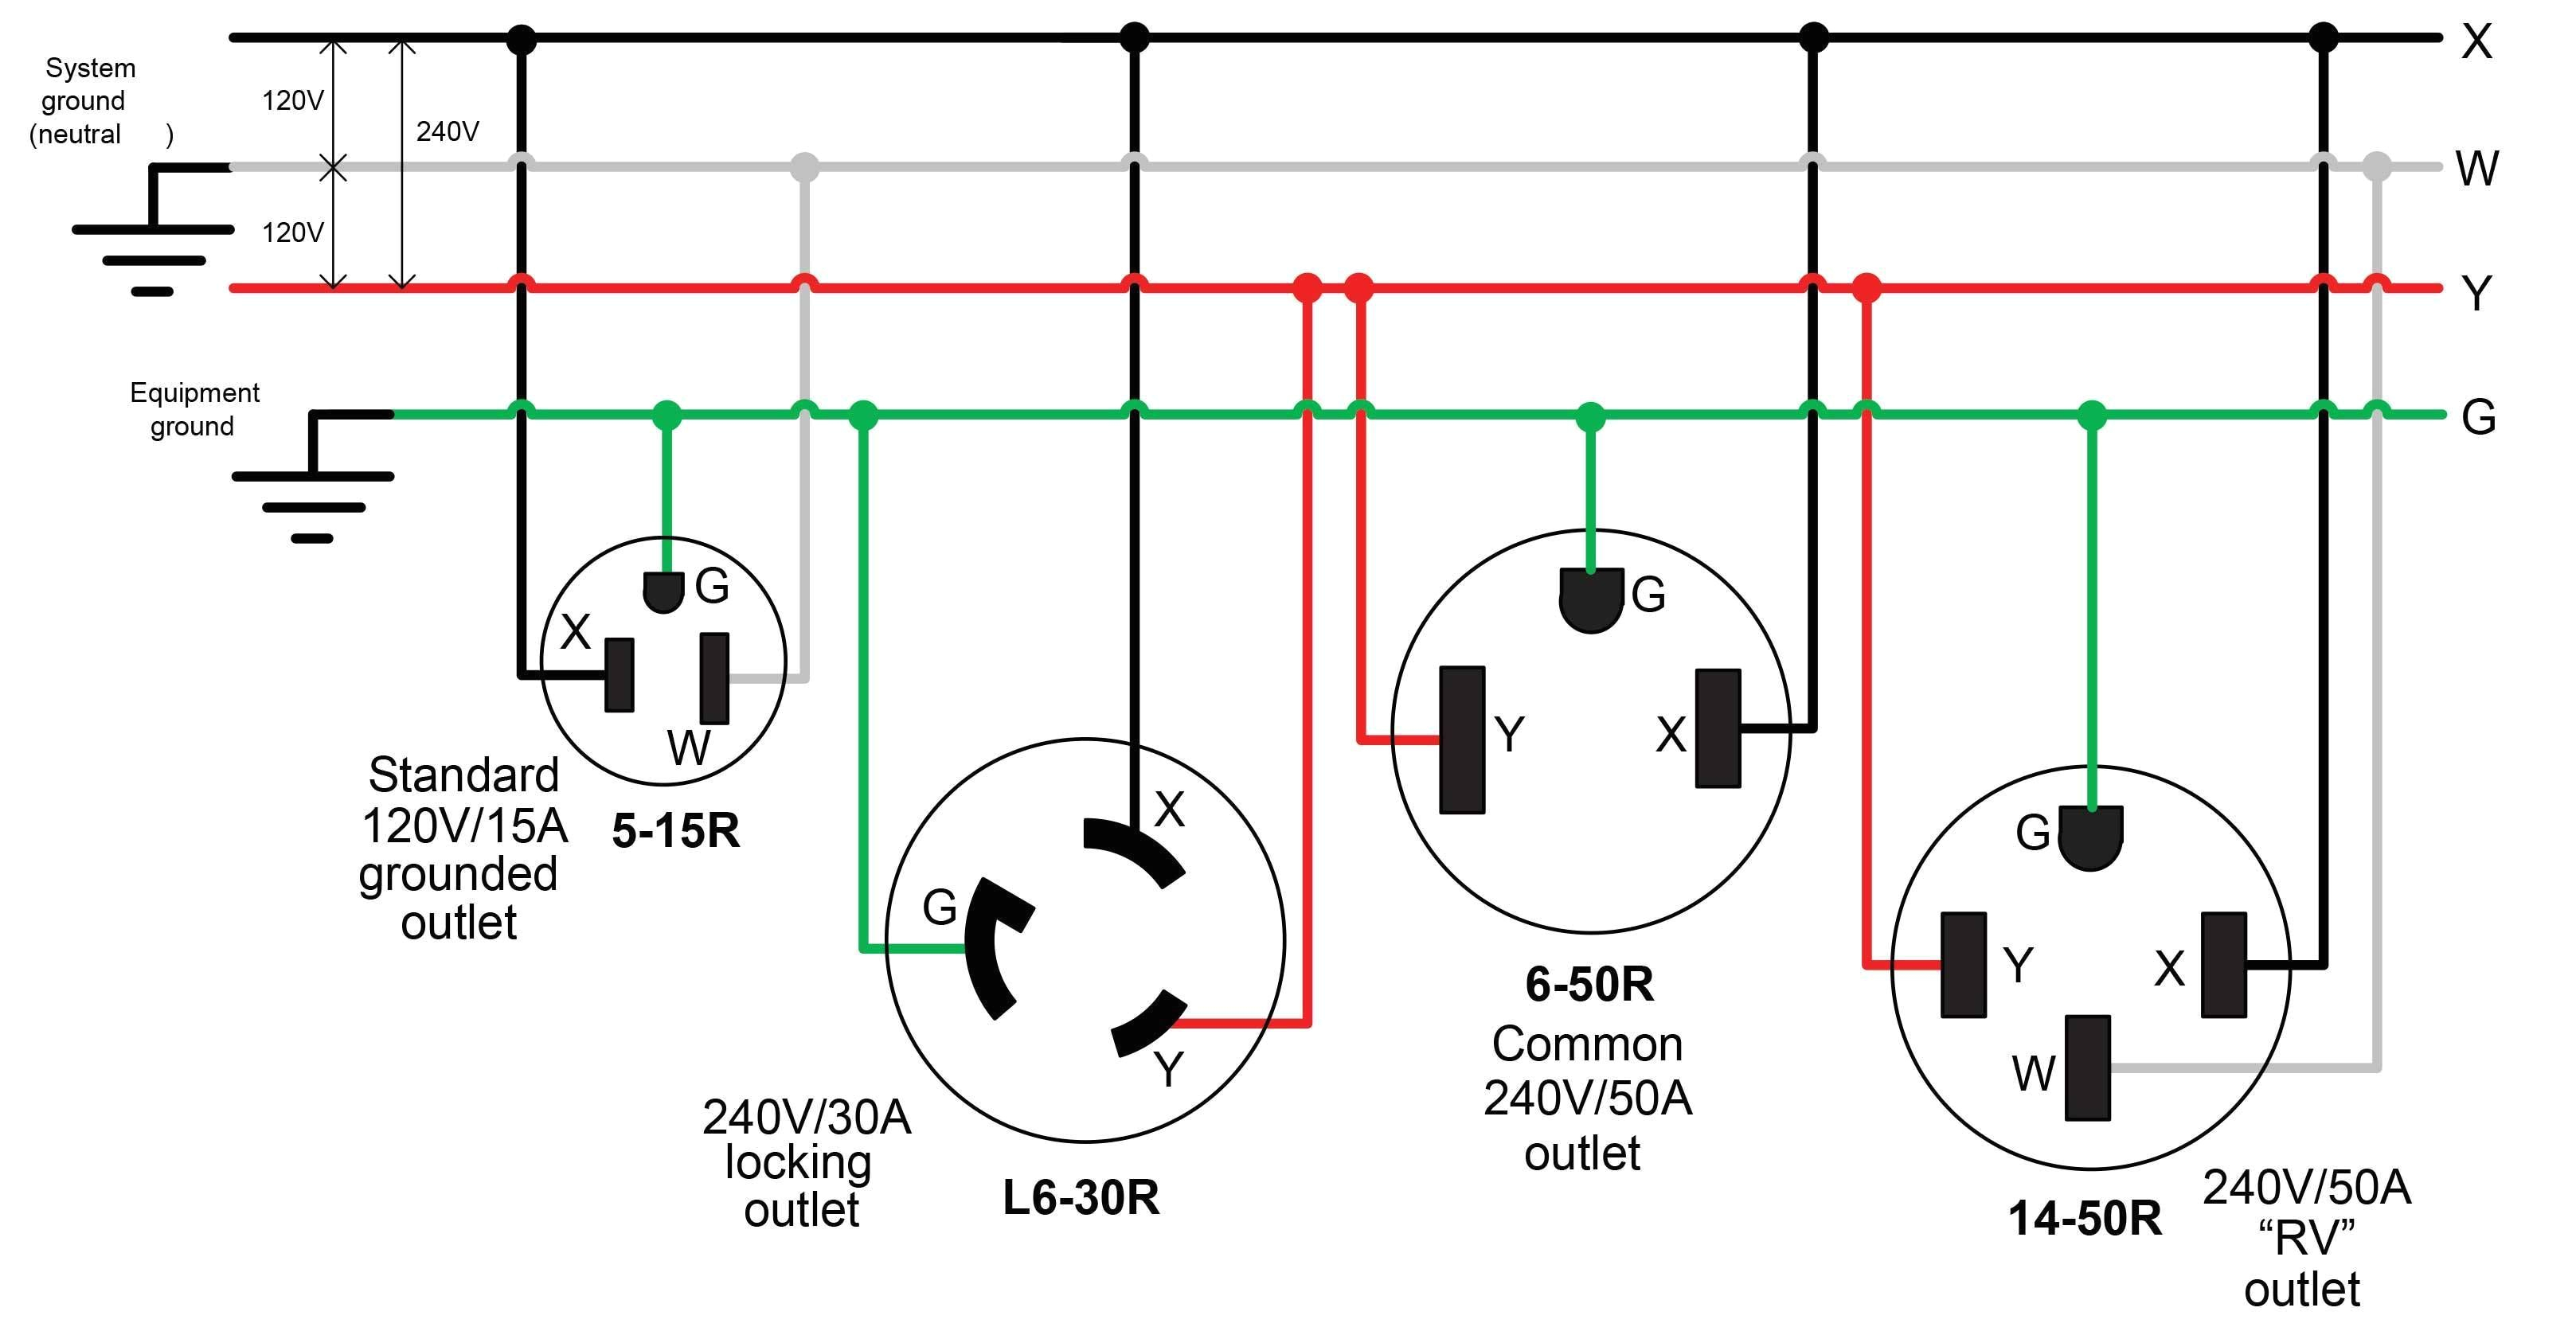 250v schematic wiring wiring diagram expert wiring 20 250v schematic